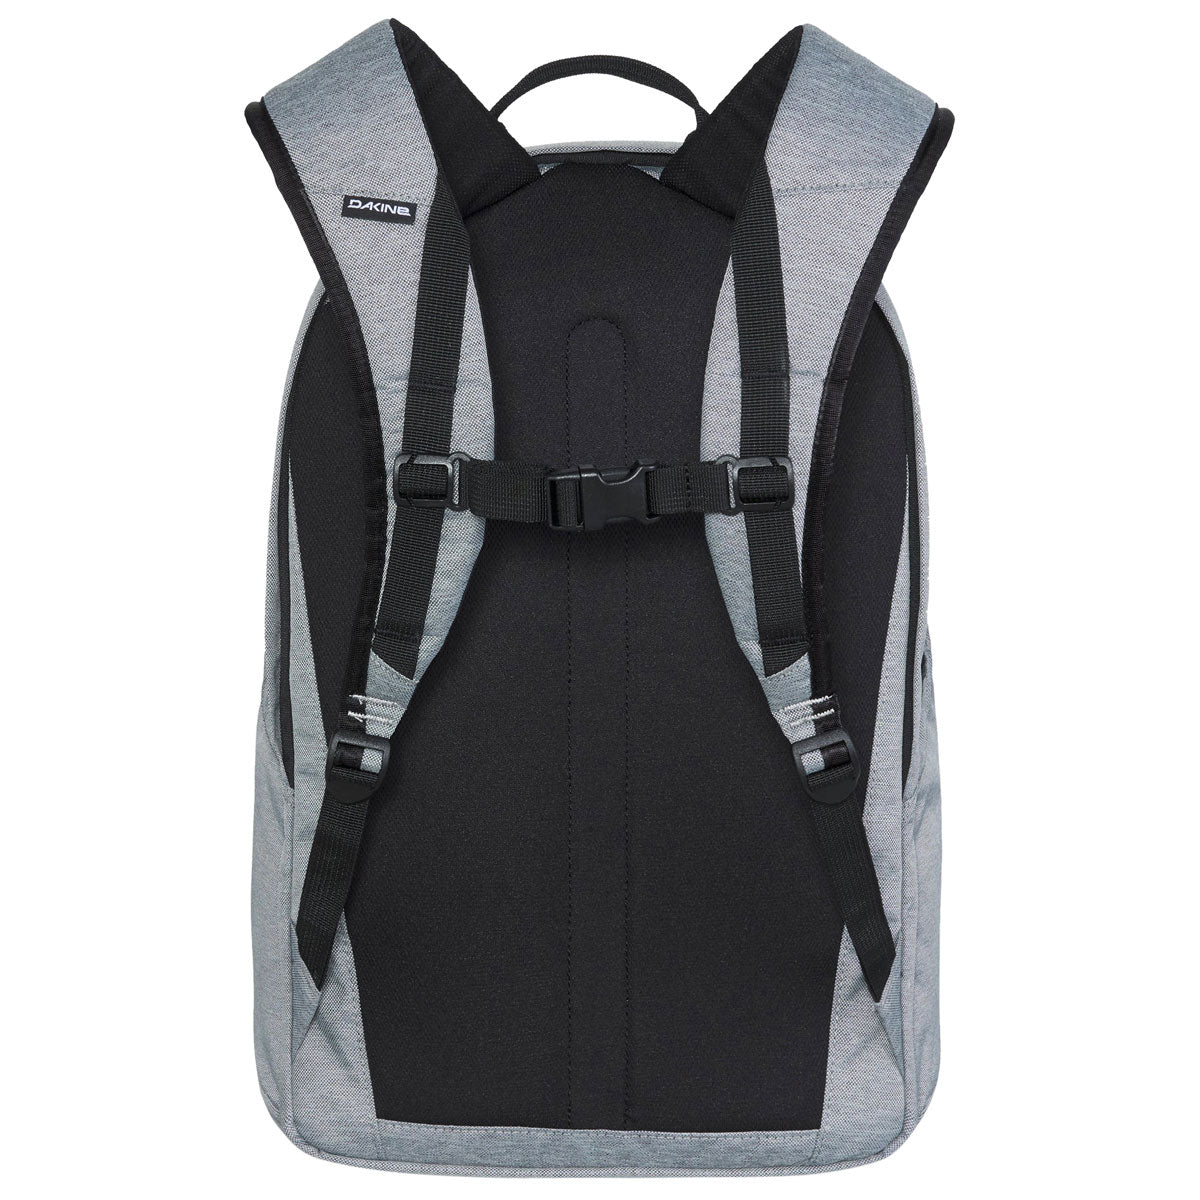 Dakine Method 25L Backpack - Geyser Grey image 2